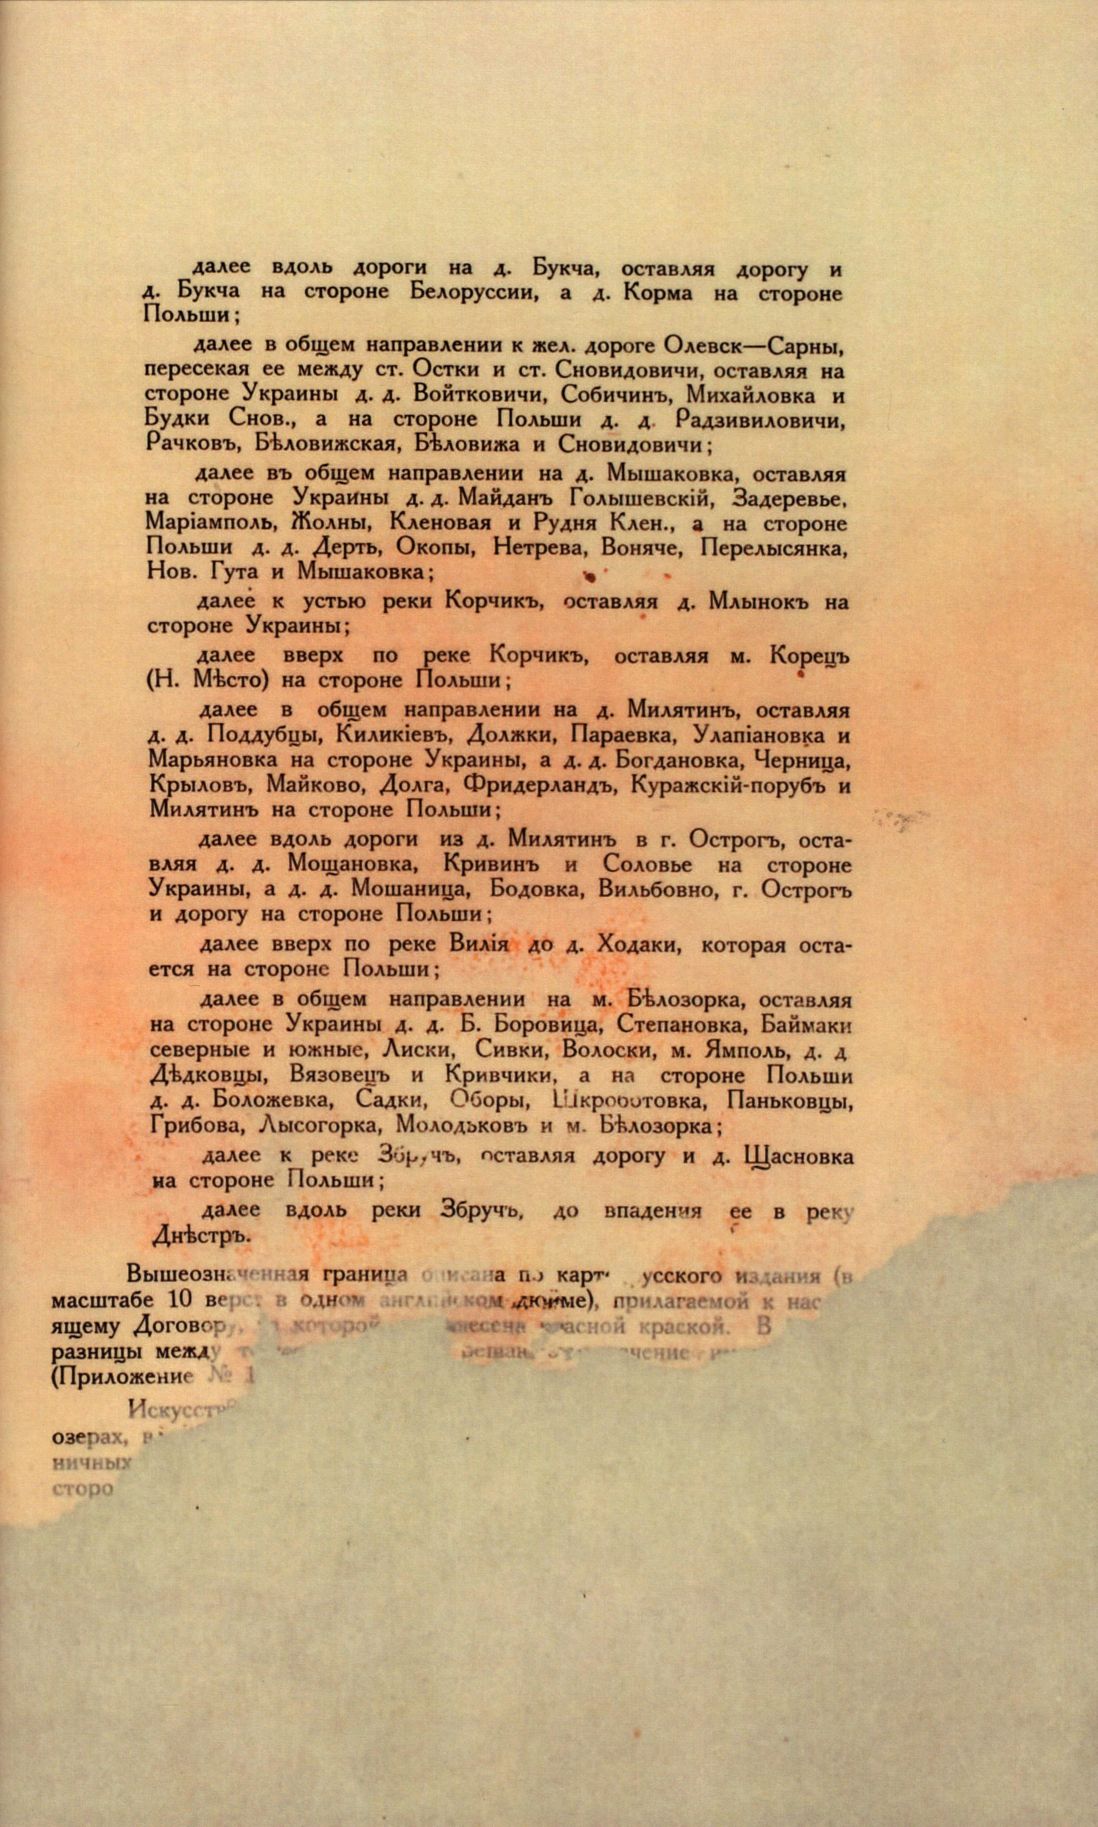 Traktat Pokoju między Polską a Rosją i Ukrainą podpisany w Rydze dnia 18 marca 1921 roku, s. 69, MSZ, sygn. 6739.